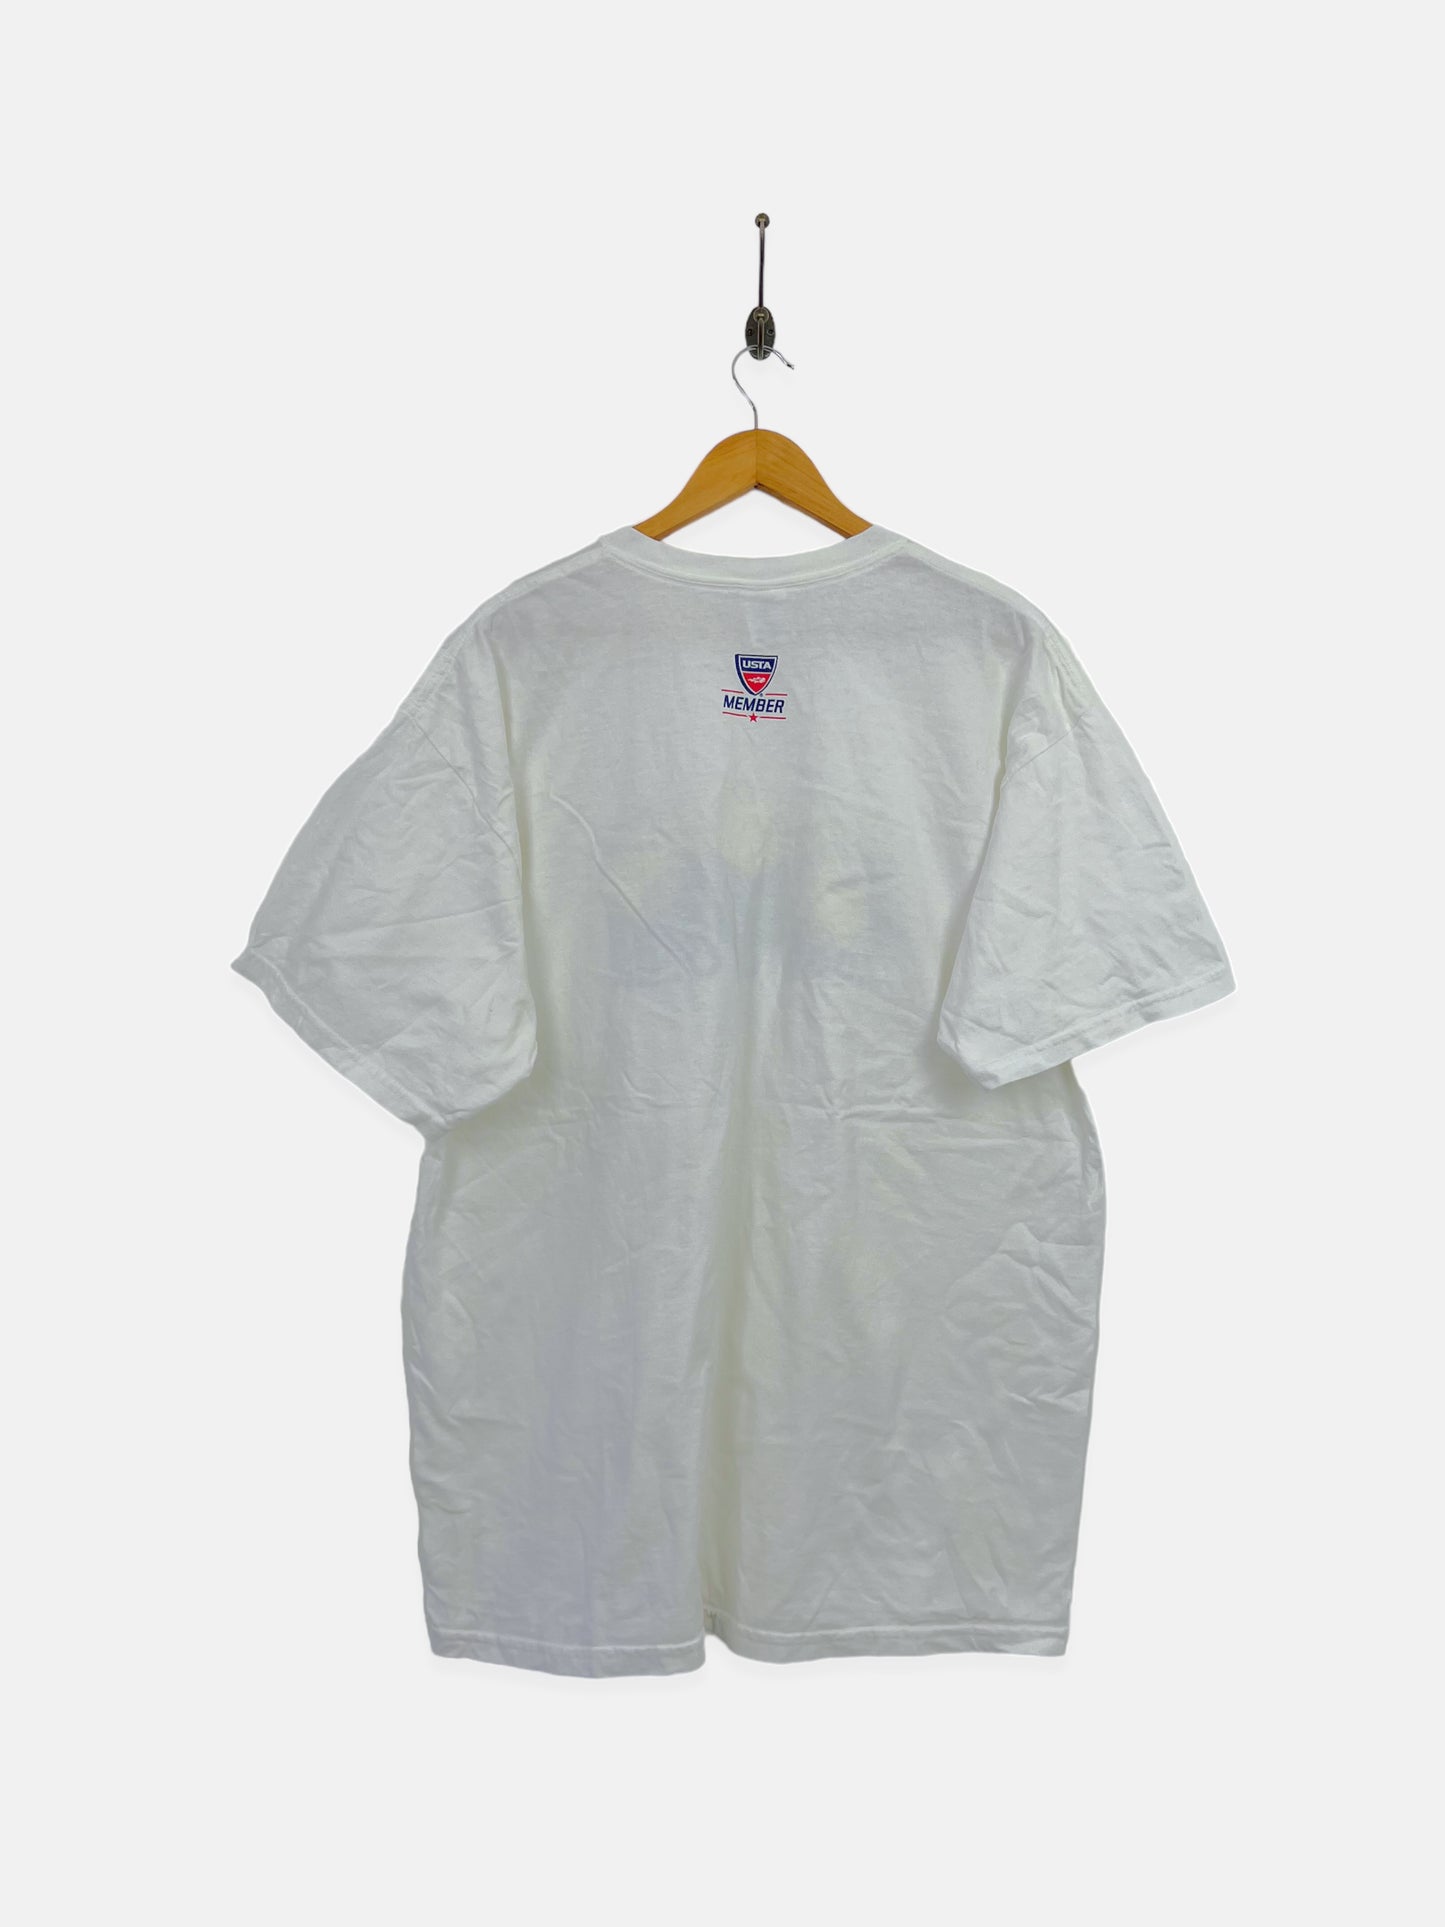 2009 US Tennis Open Vintage T-Shirt Size XL